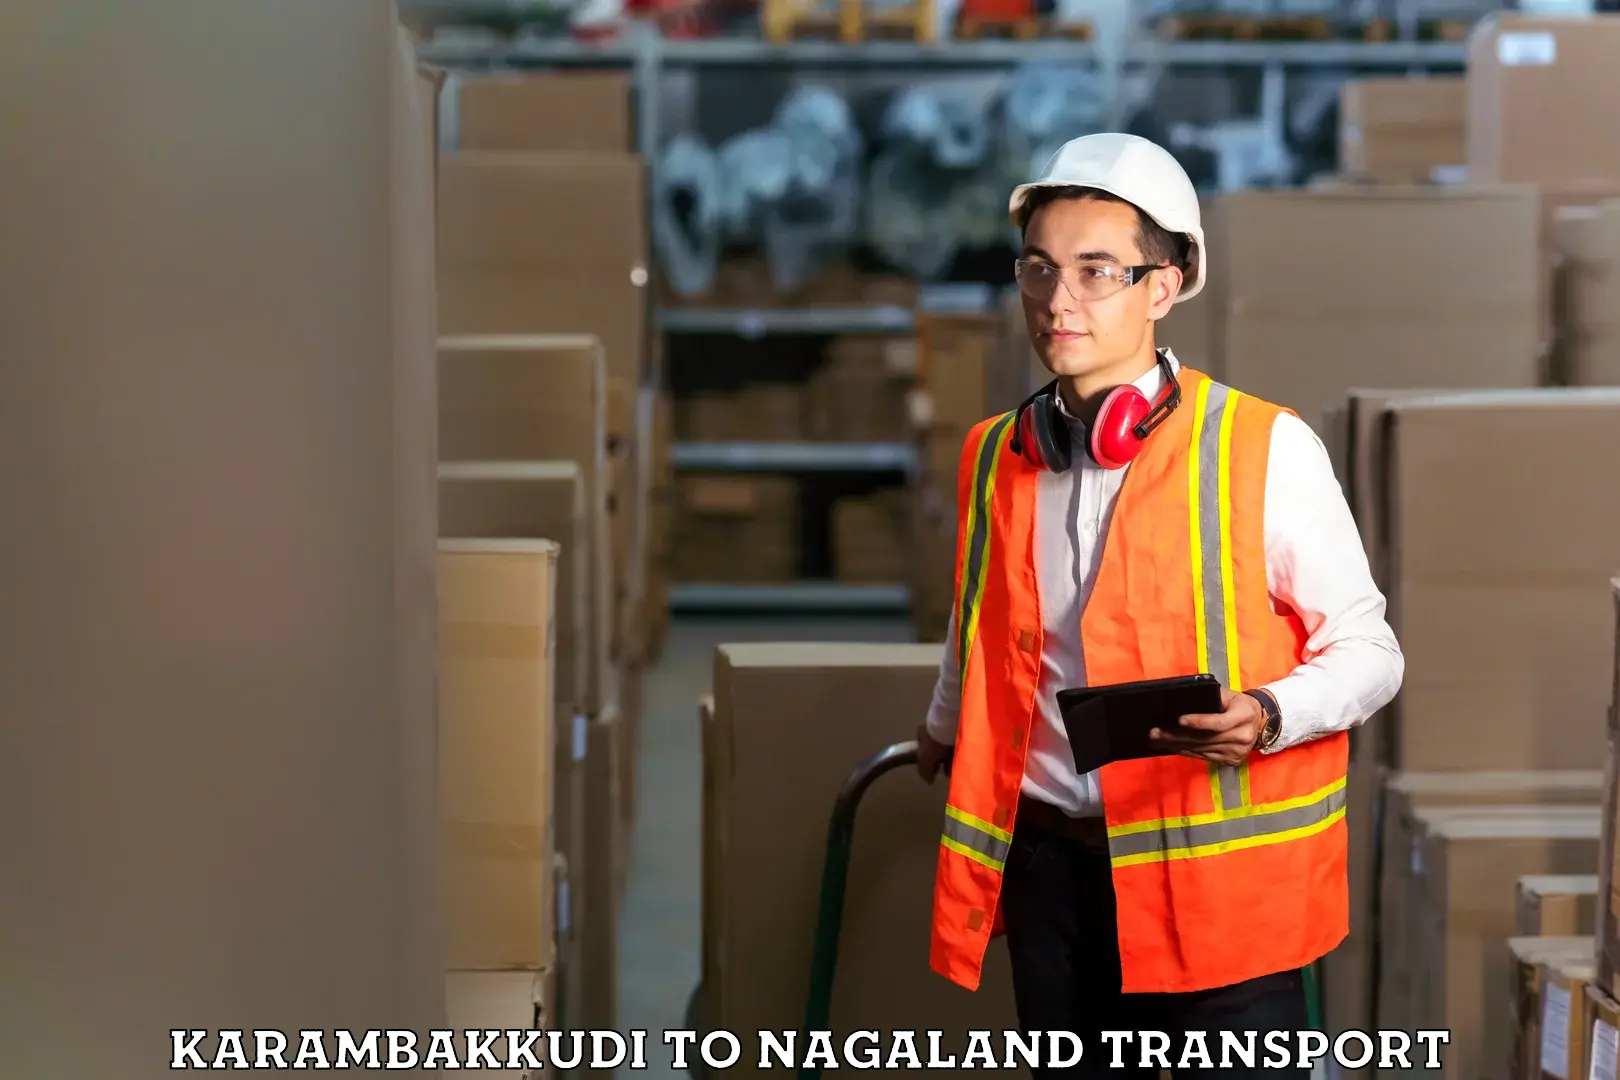 Online transport service Karambakkudi to NIT Nagaland